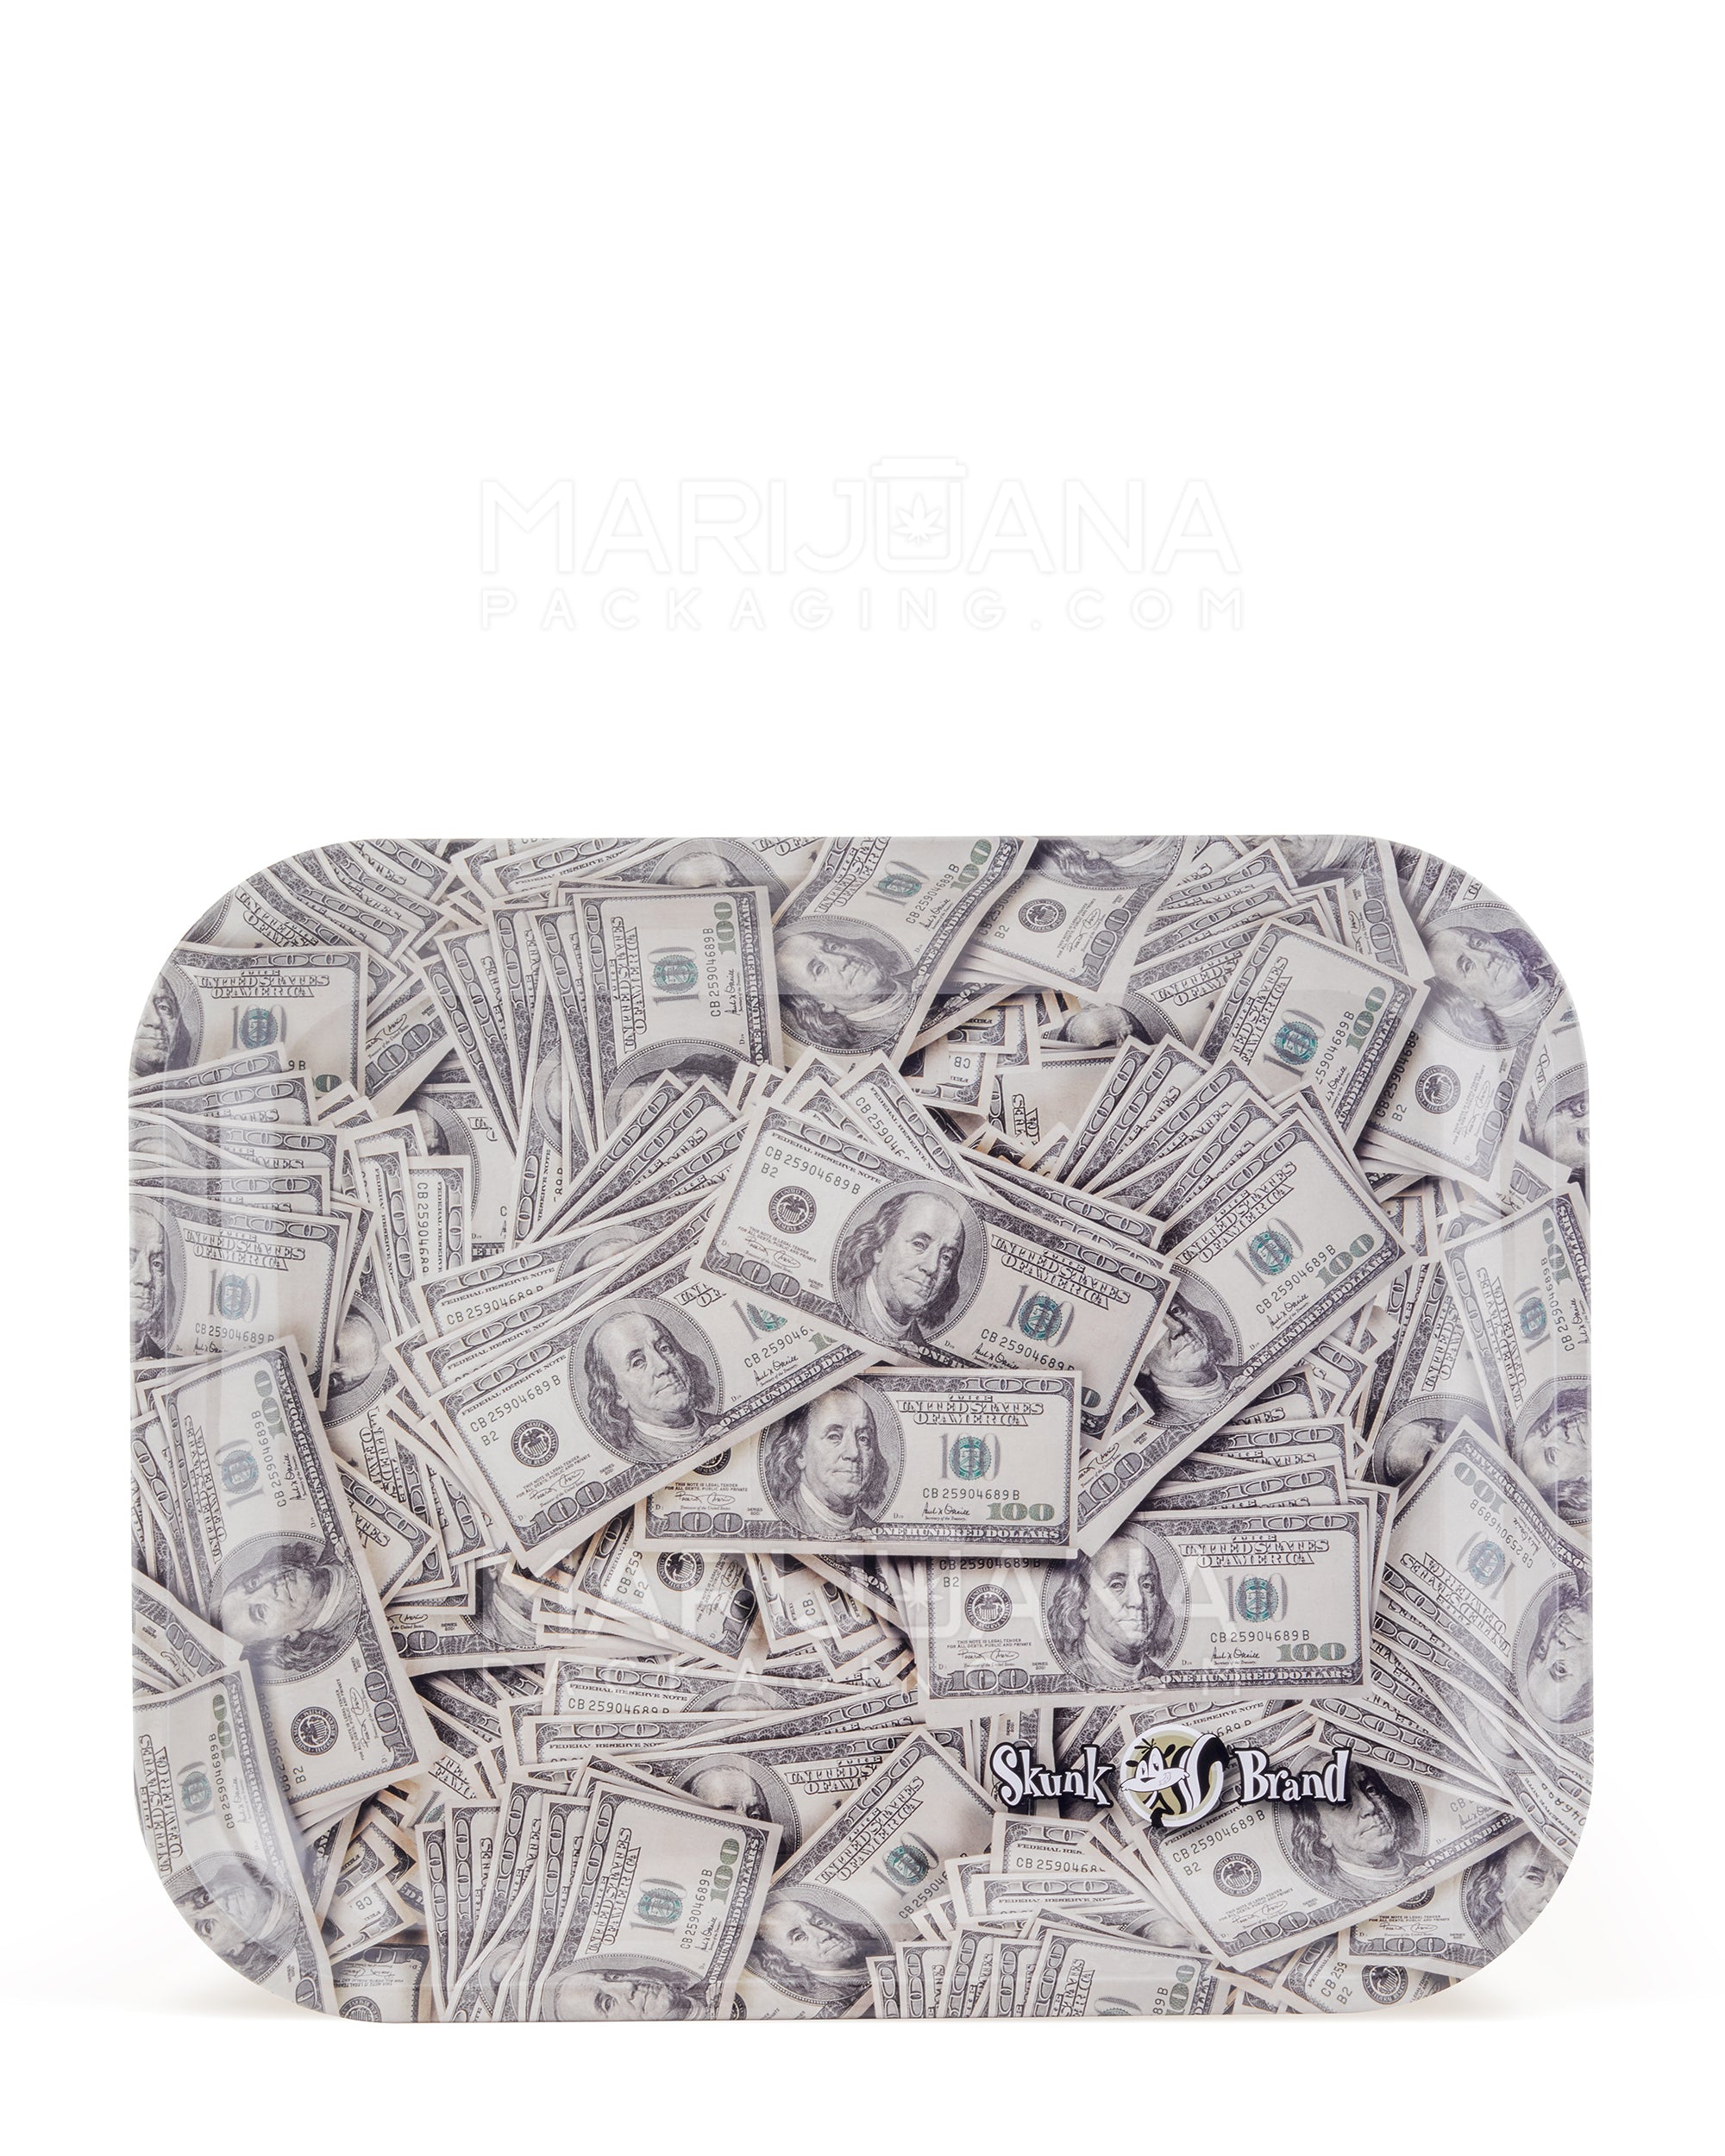 SKUNK | Money Benjamins Rolling Tray | 14in x 11in - Large - Metal